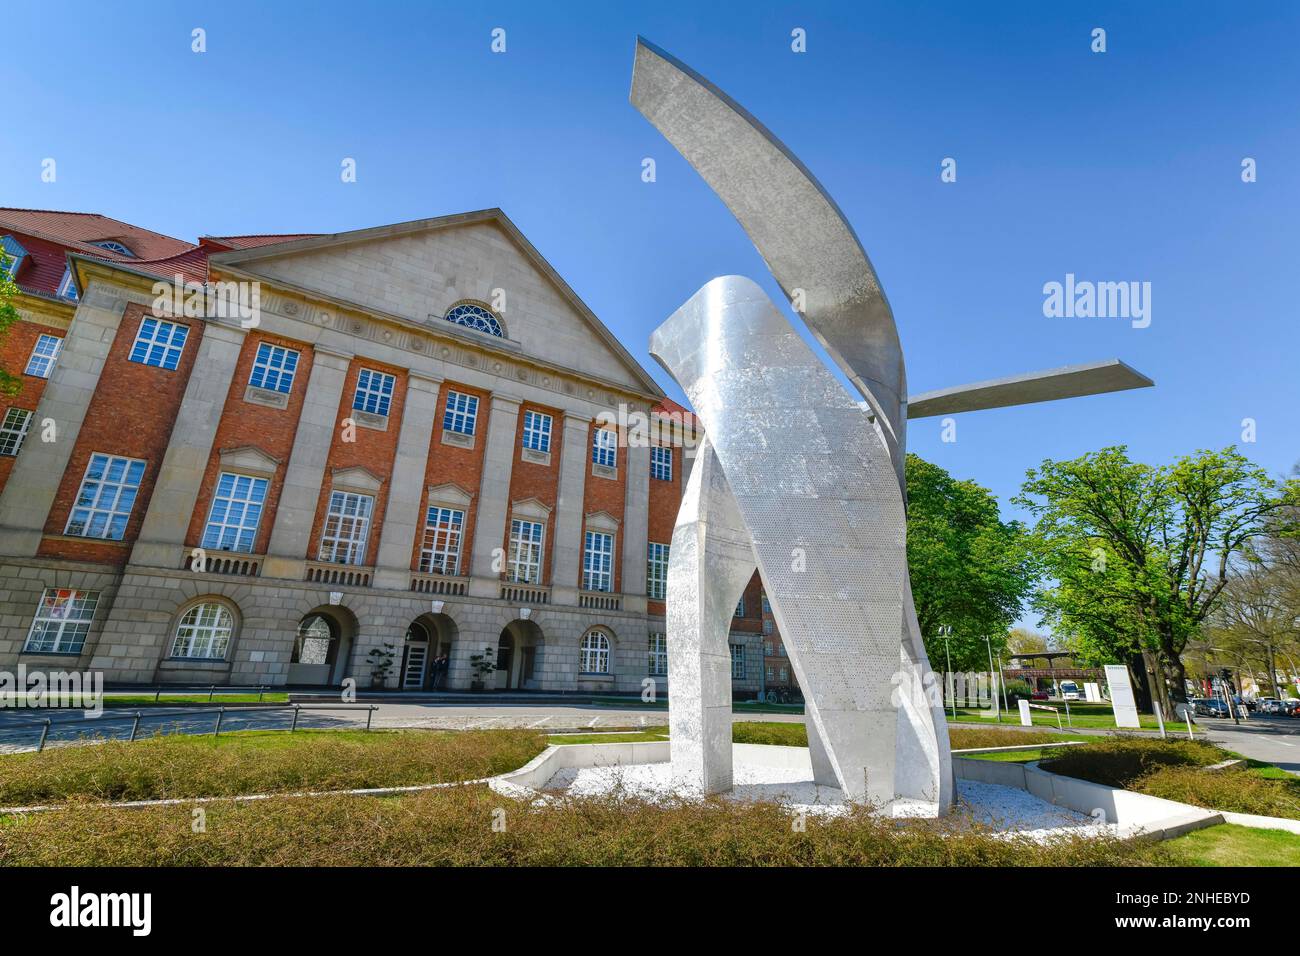 Sculpture de Daniel Libeskind, aile, devant le bâtiment administratif de Siemens, Rohrdamm, Siemensstadt, Spandau, Berlin, Allemagne Banque D'Images